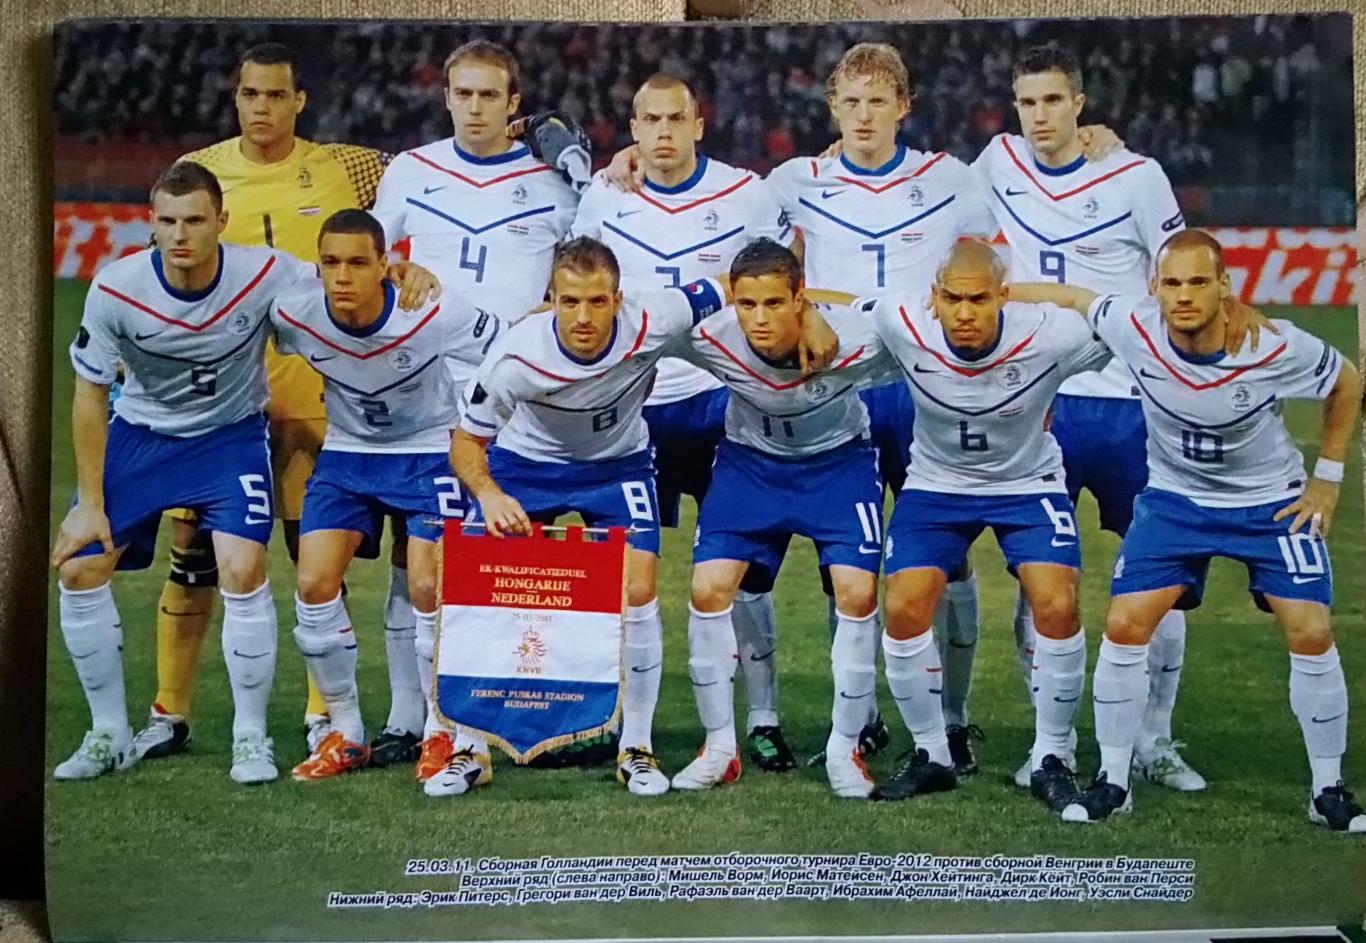 Футбол. Спецвидання. N9/2011.Чемпіонат Європи 2012. 2